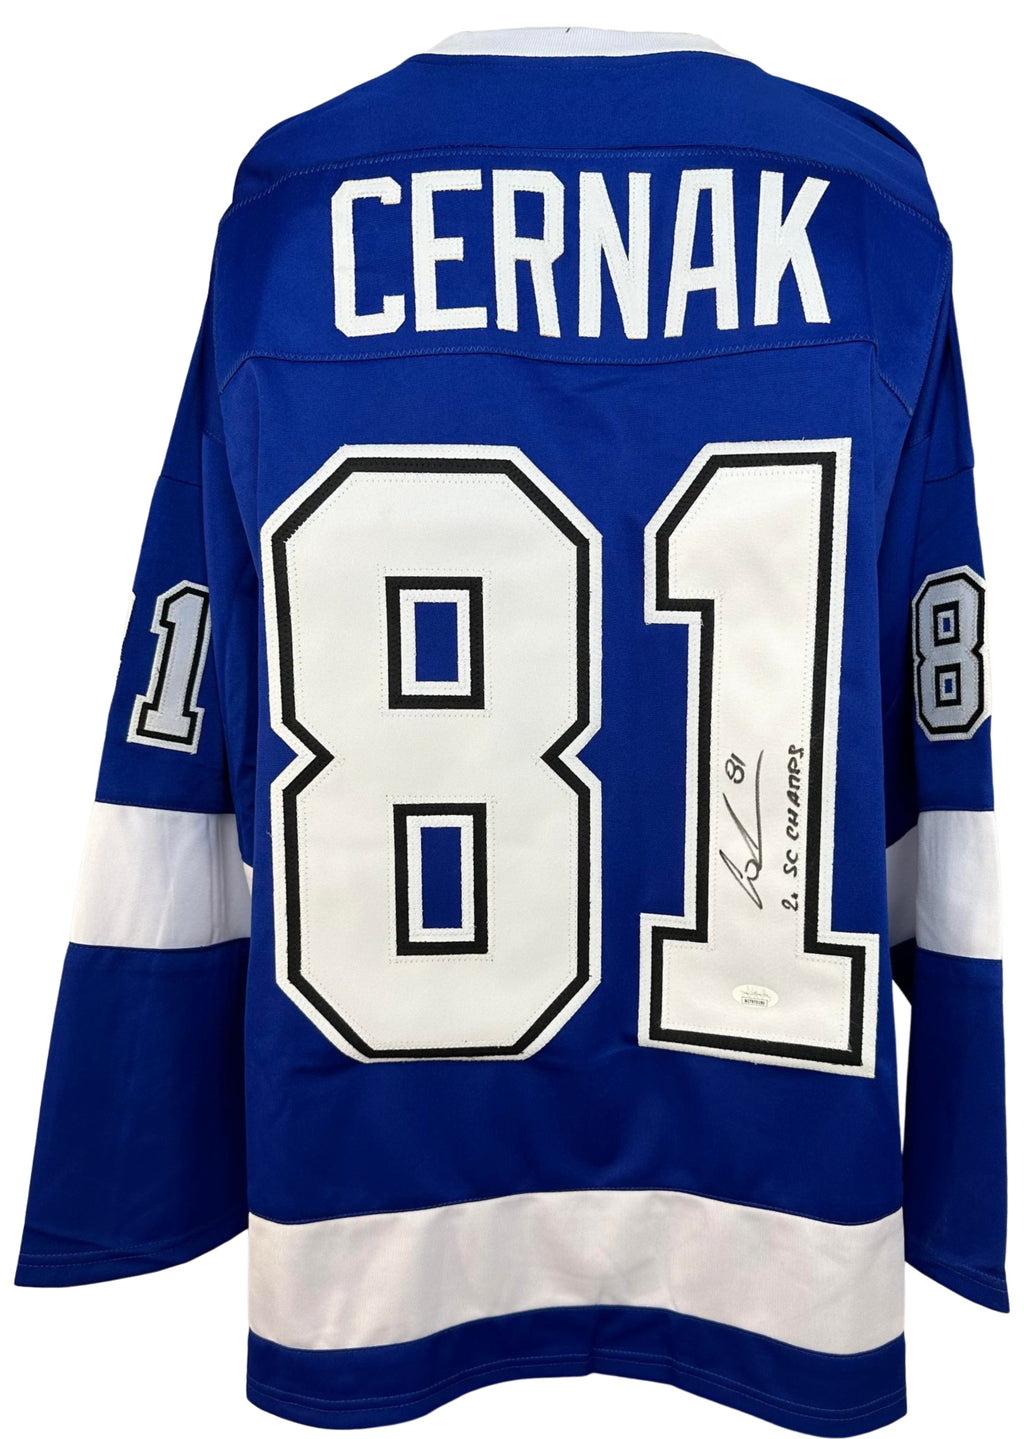 Erik Cernak autographed signed inscribed jersey NHL Tampa Bay Lightning JSA COA